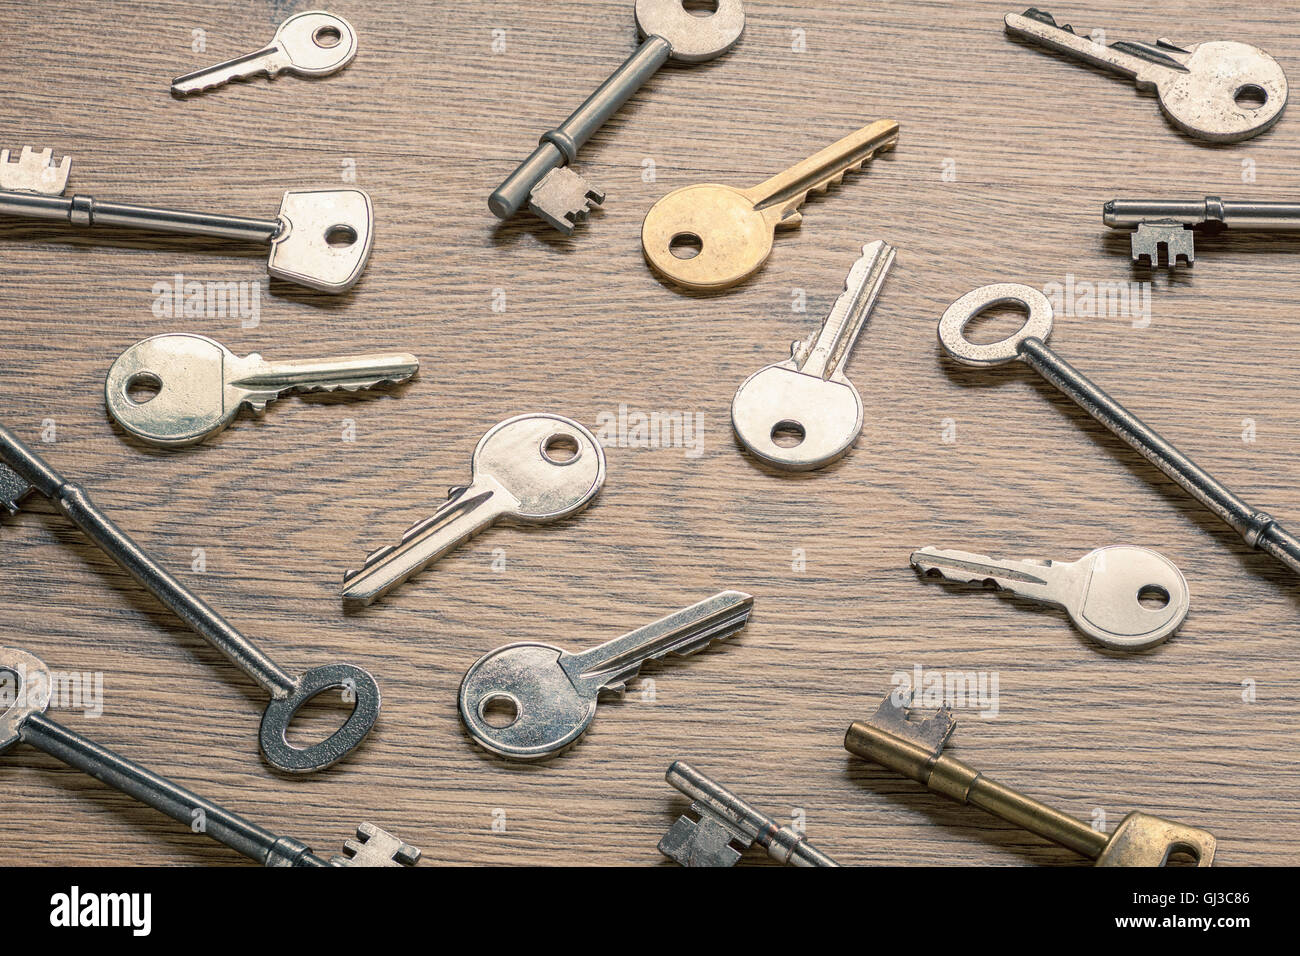 Keys on wooden surface Stock Photo